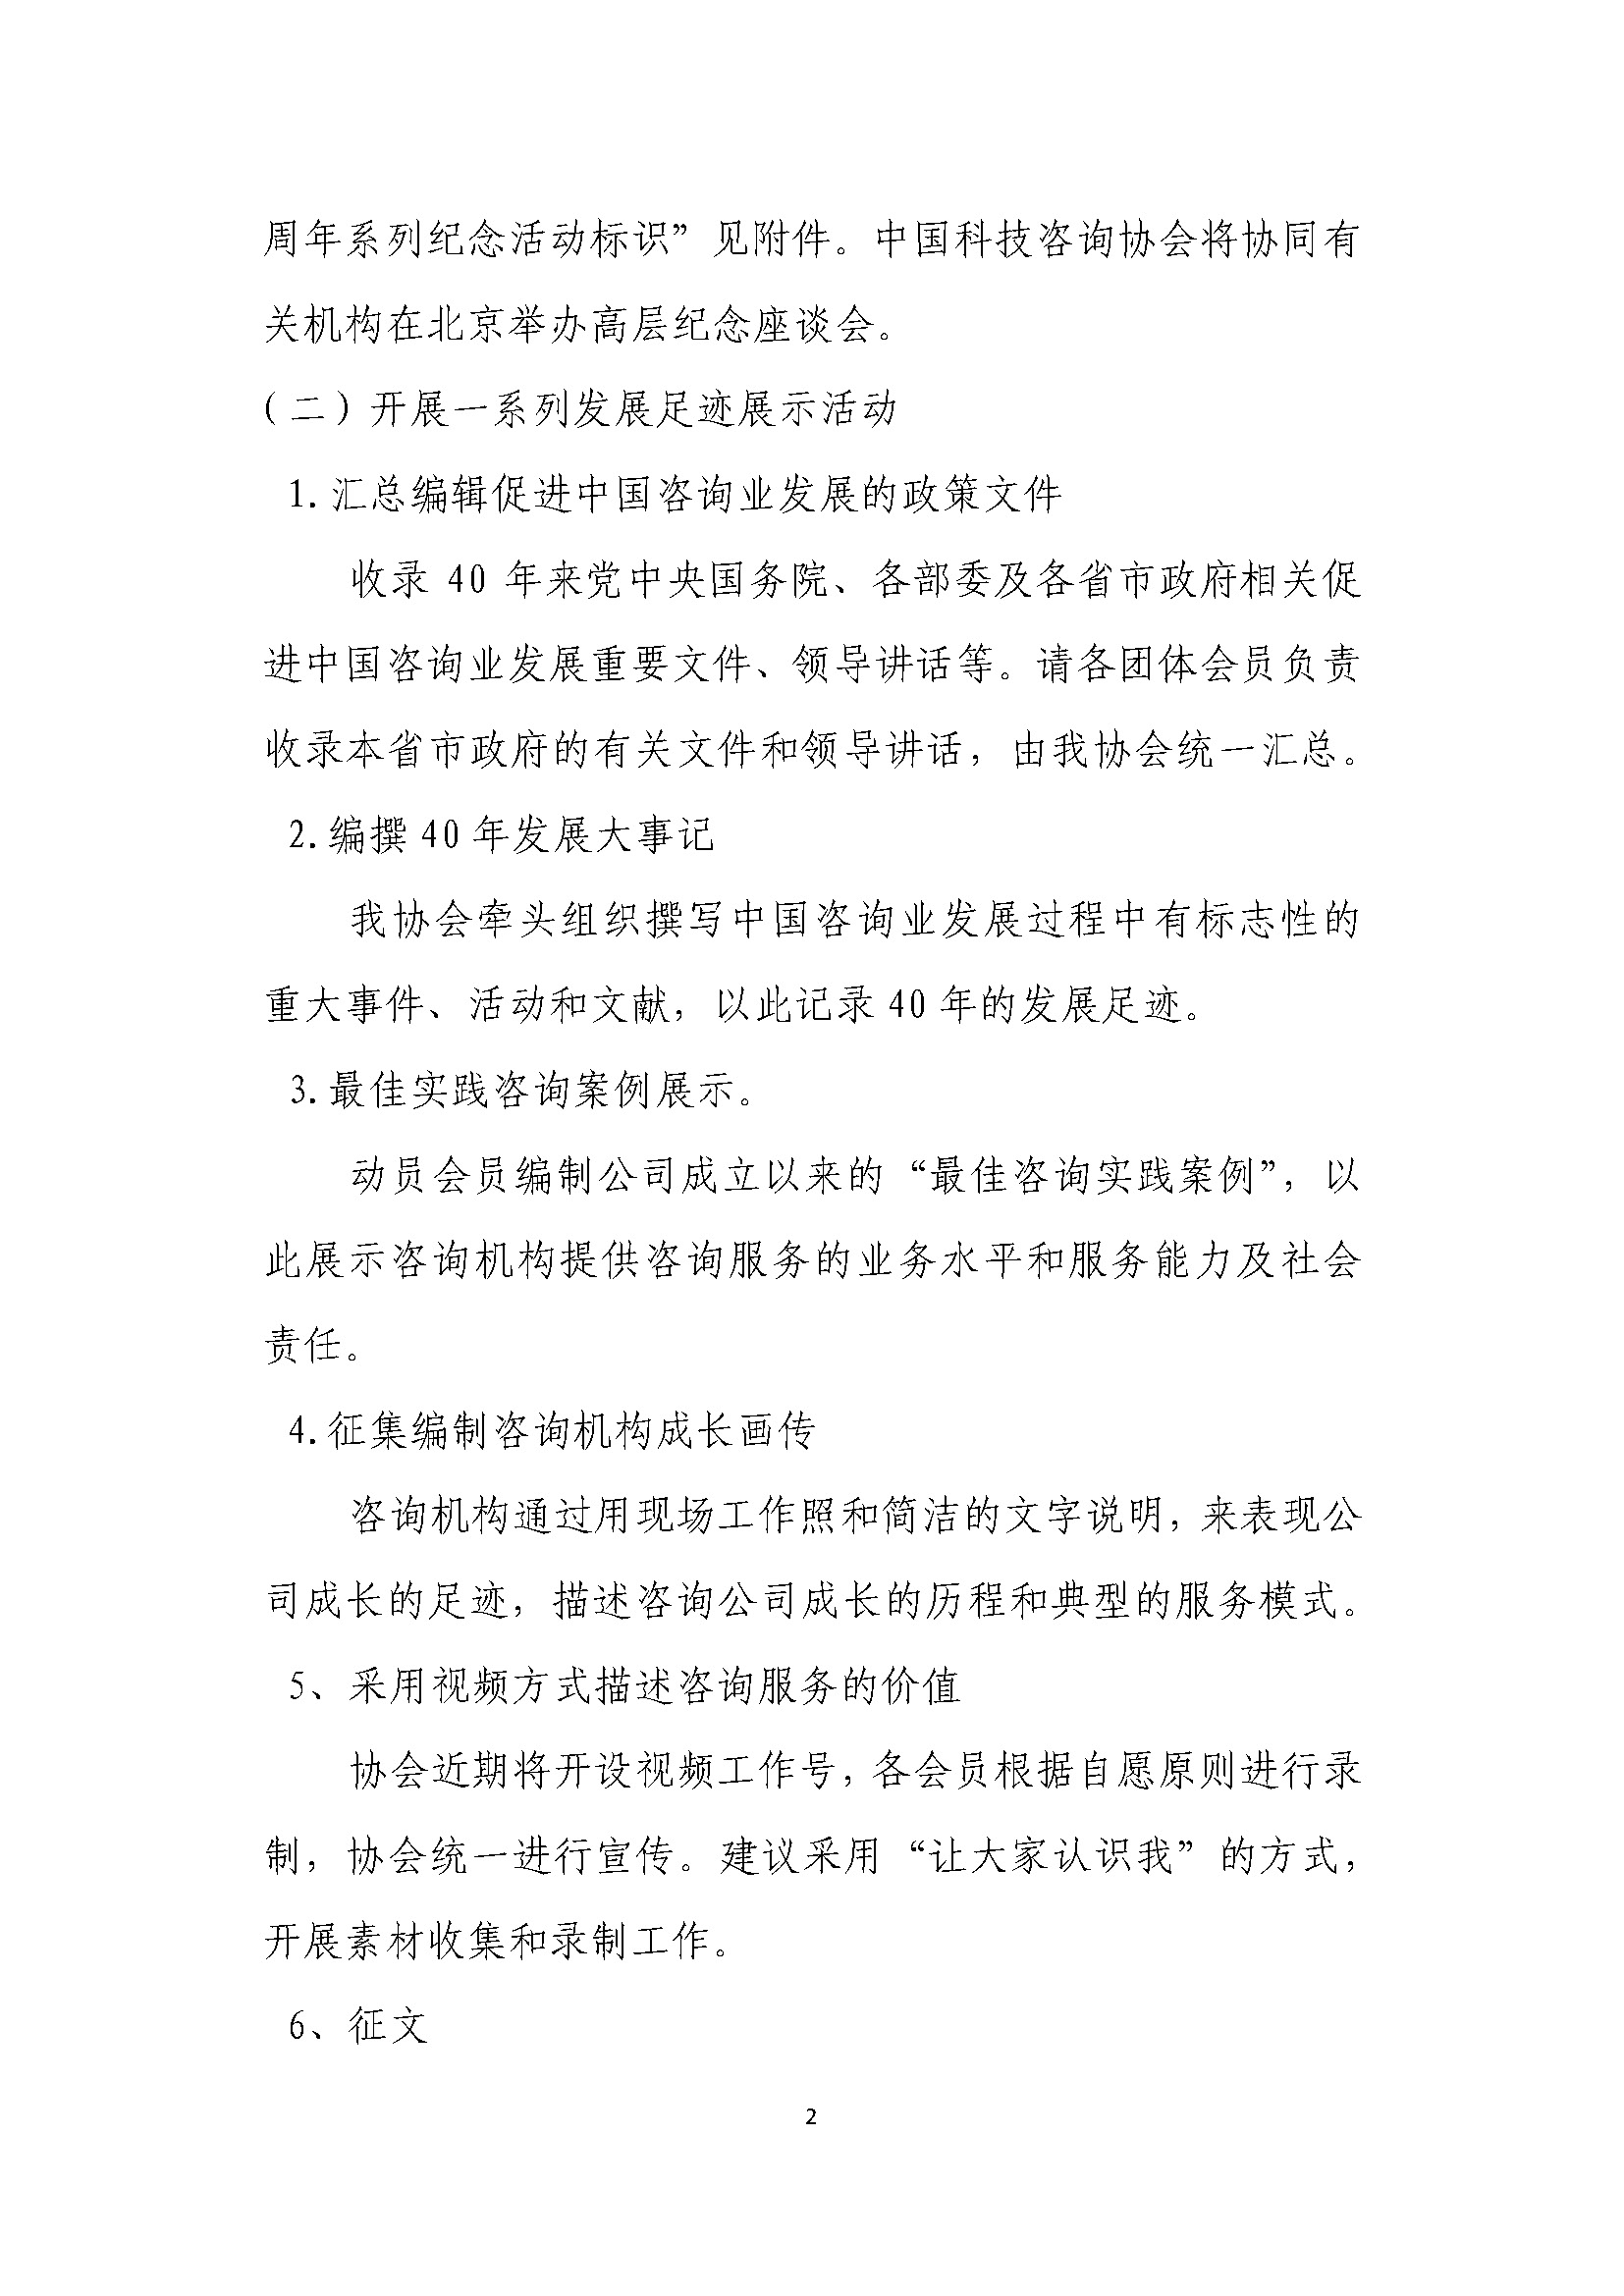 中国咨询业40周年系列活动通知_页面_1_页面_2.jpg